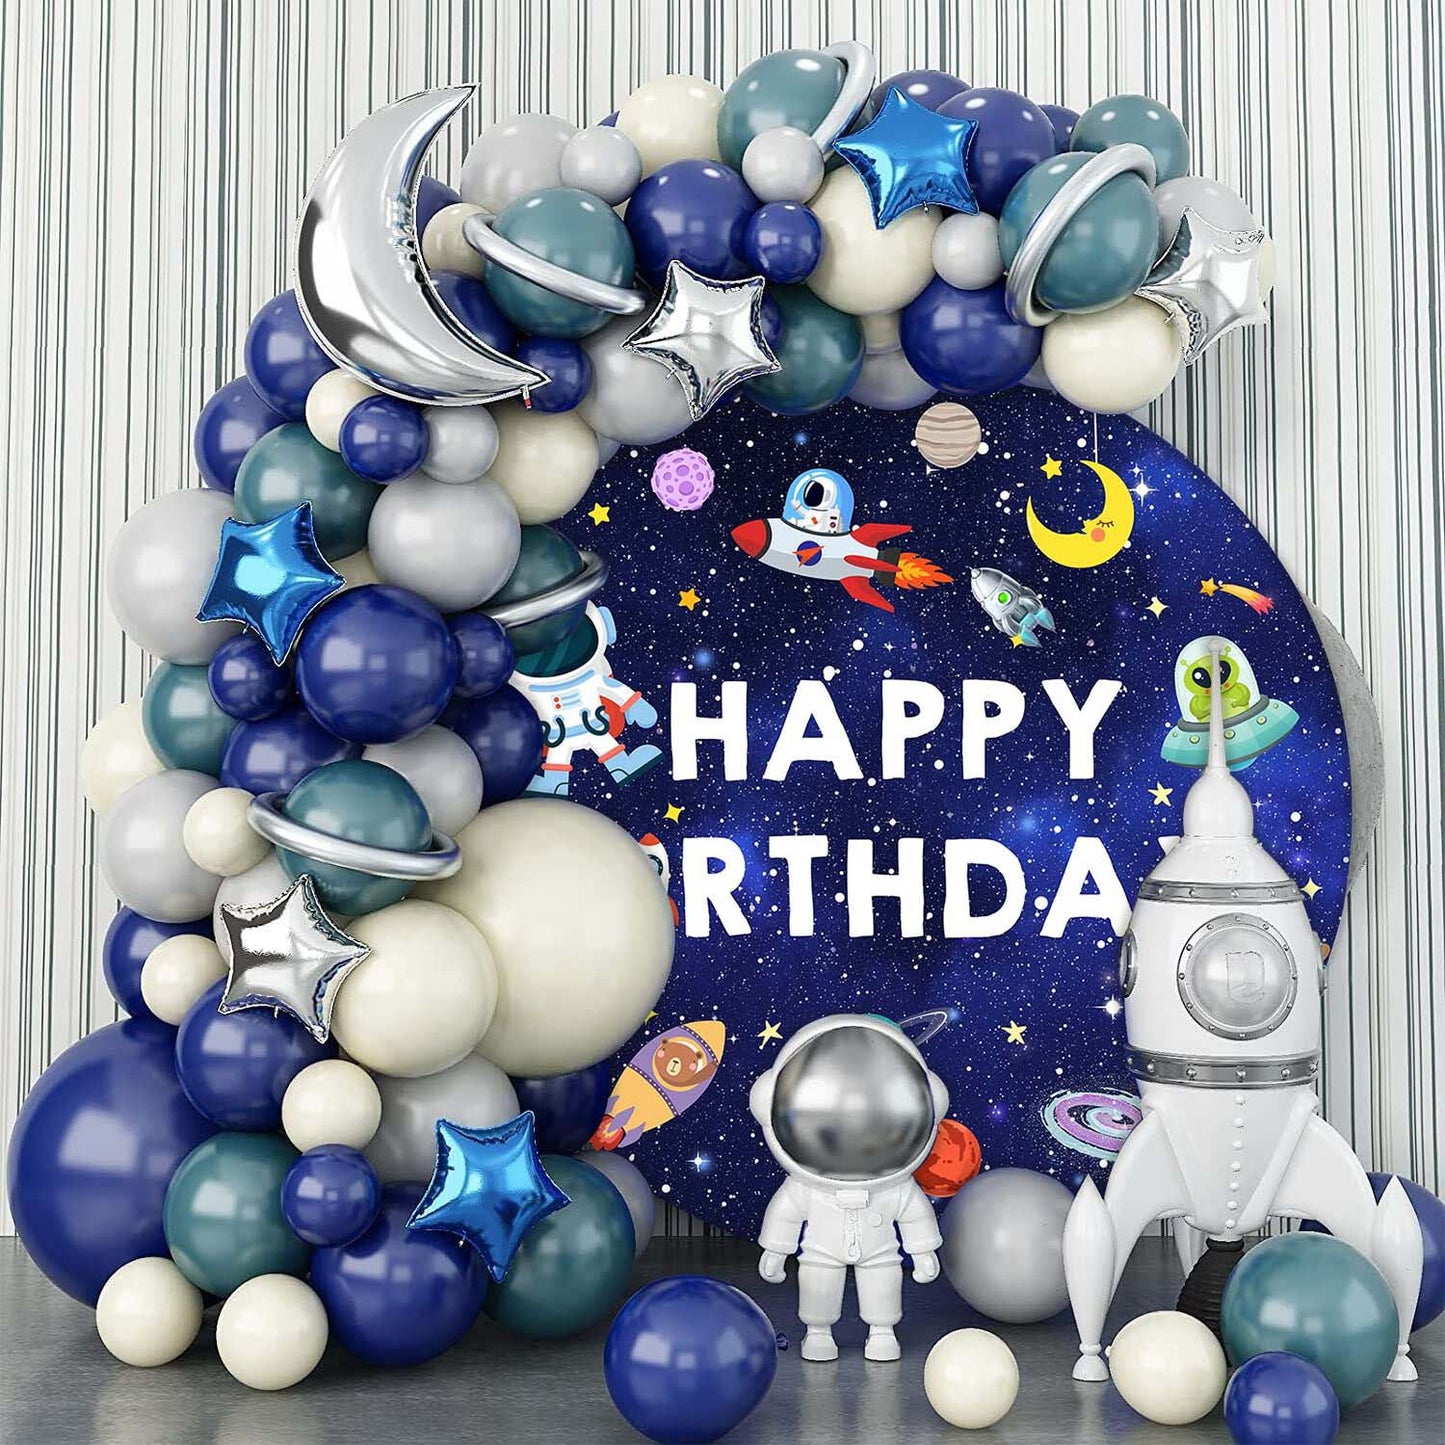 Mocsicka Space Astronaut Happy Birthday Round Cover-Mocsicka Party